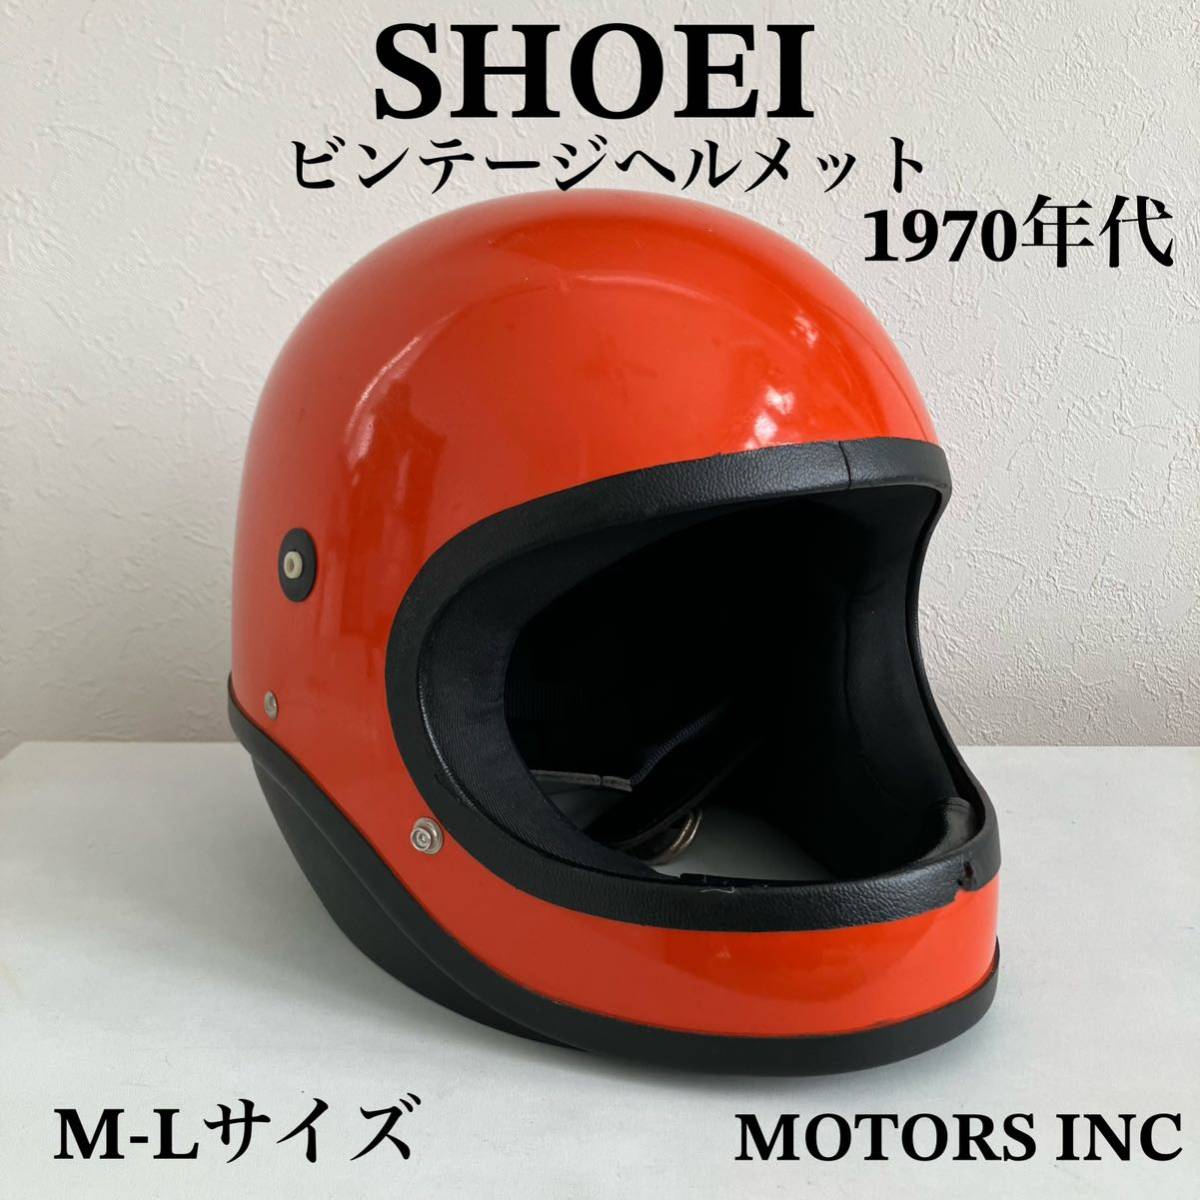 SHOEI★ビンテージヘルメット M-Lサイズ 1970年代製 S-20 族ヘル ホンダ フルフェイス 旧車 オレンジ ハーレー 当時物 USA バイク ARAI_画像1